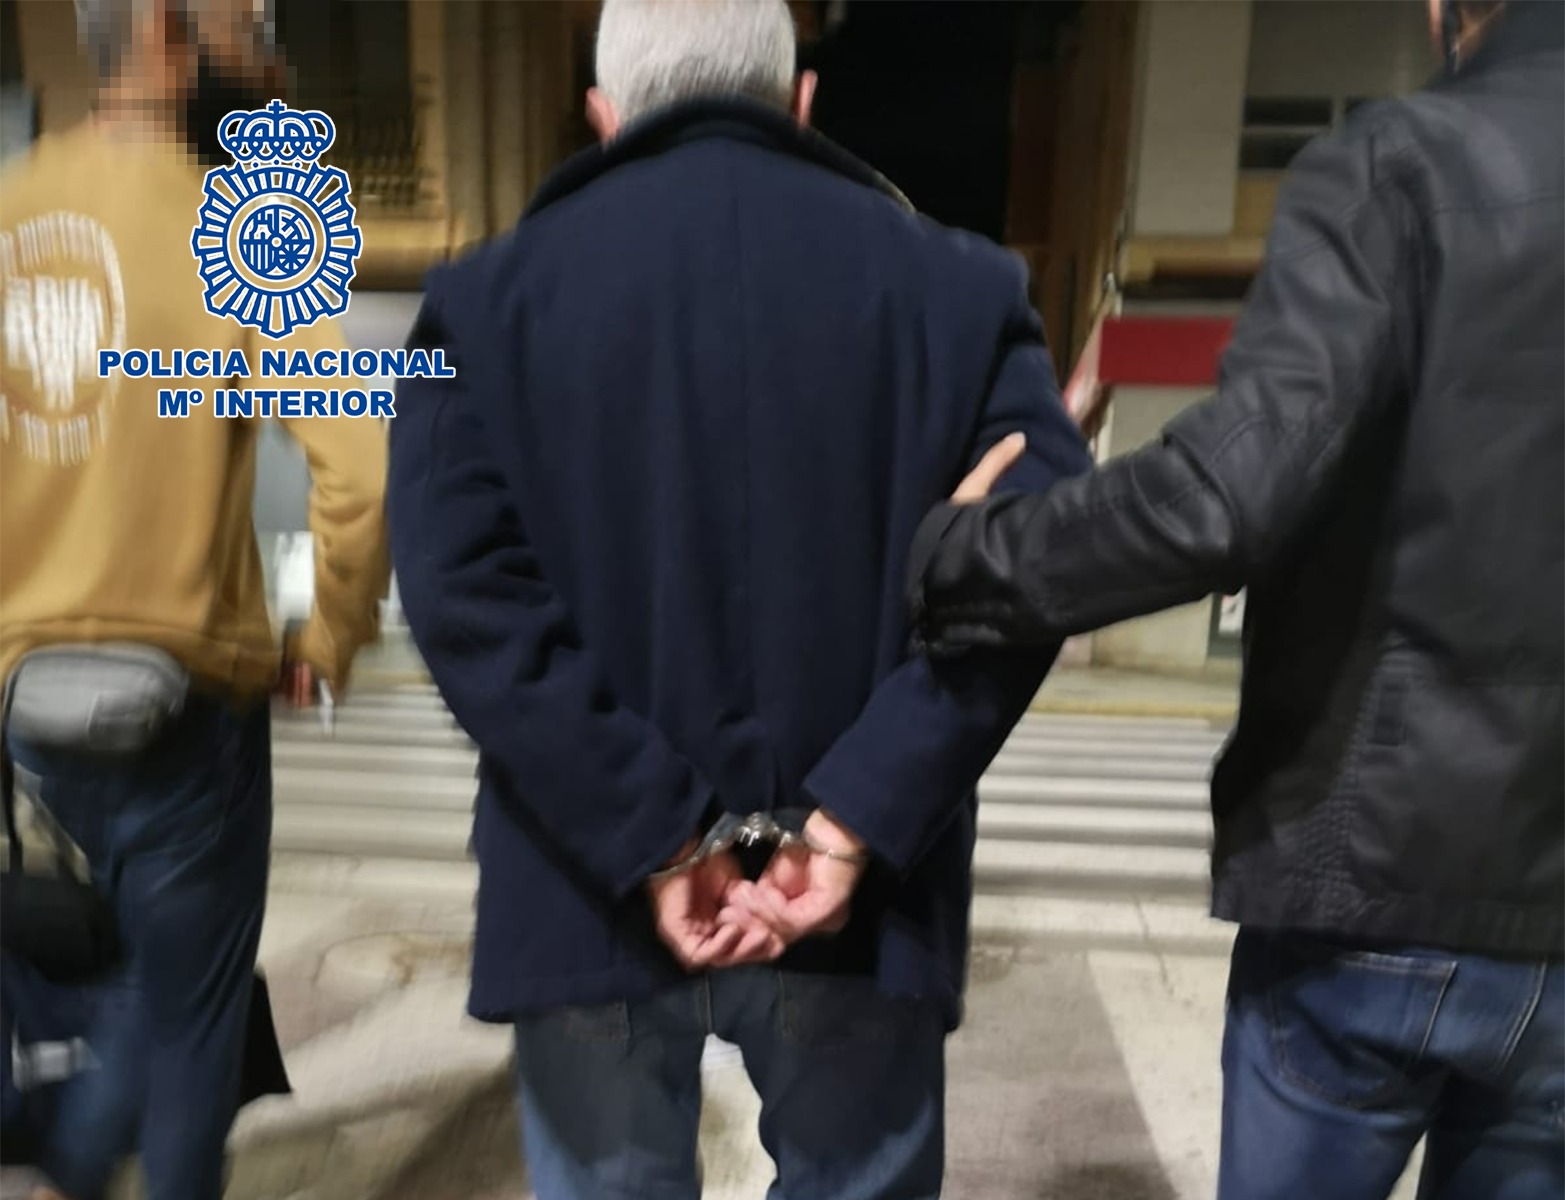 Els policies escorten a l'excoronel uruguaià detingut.